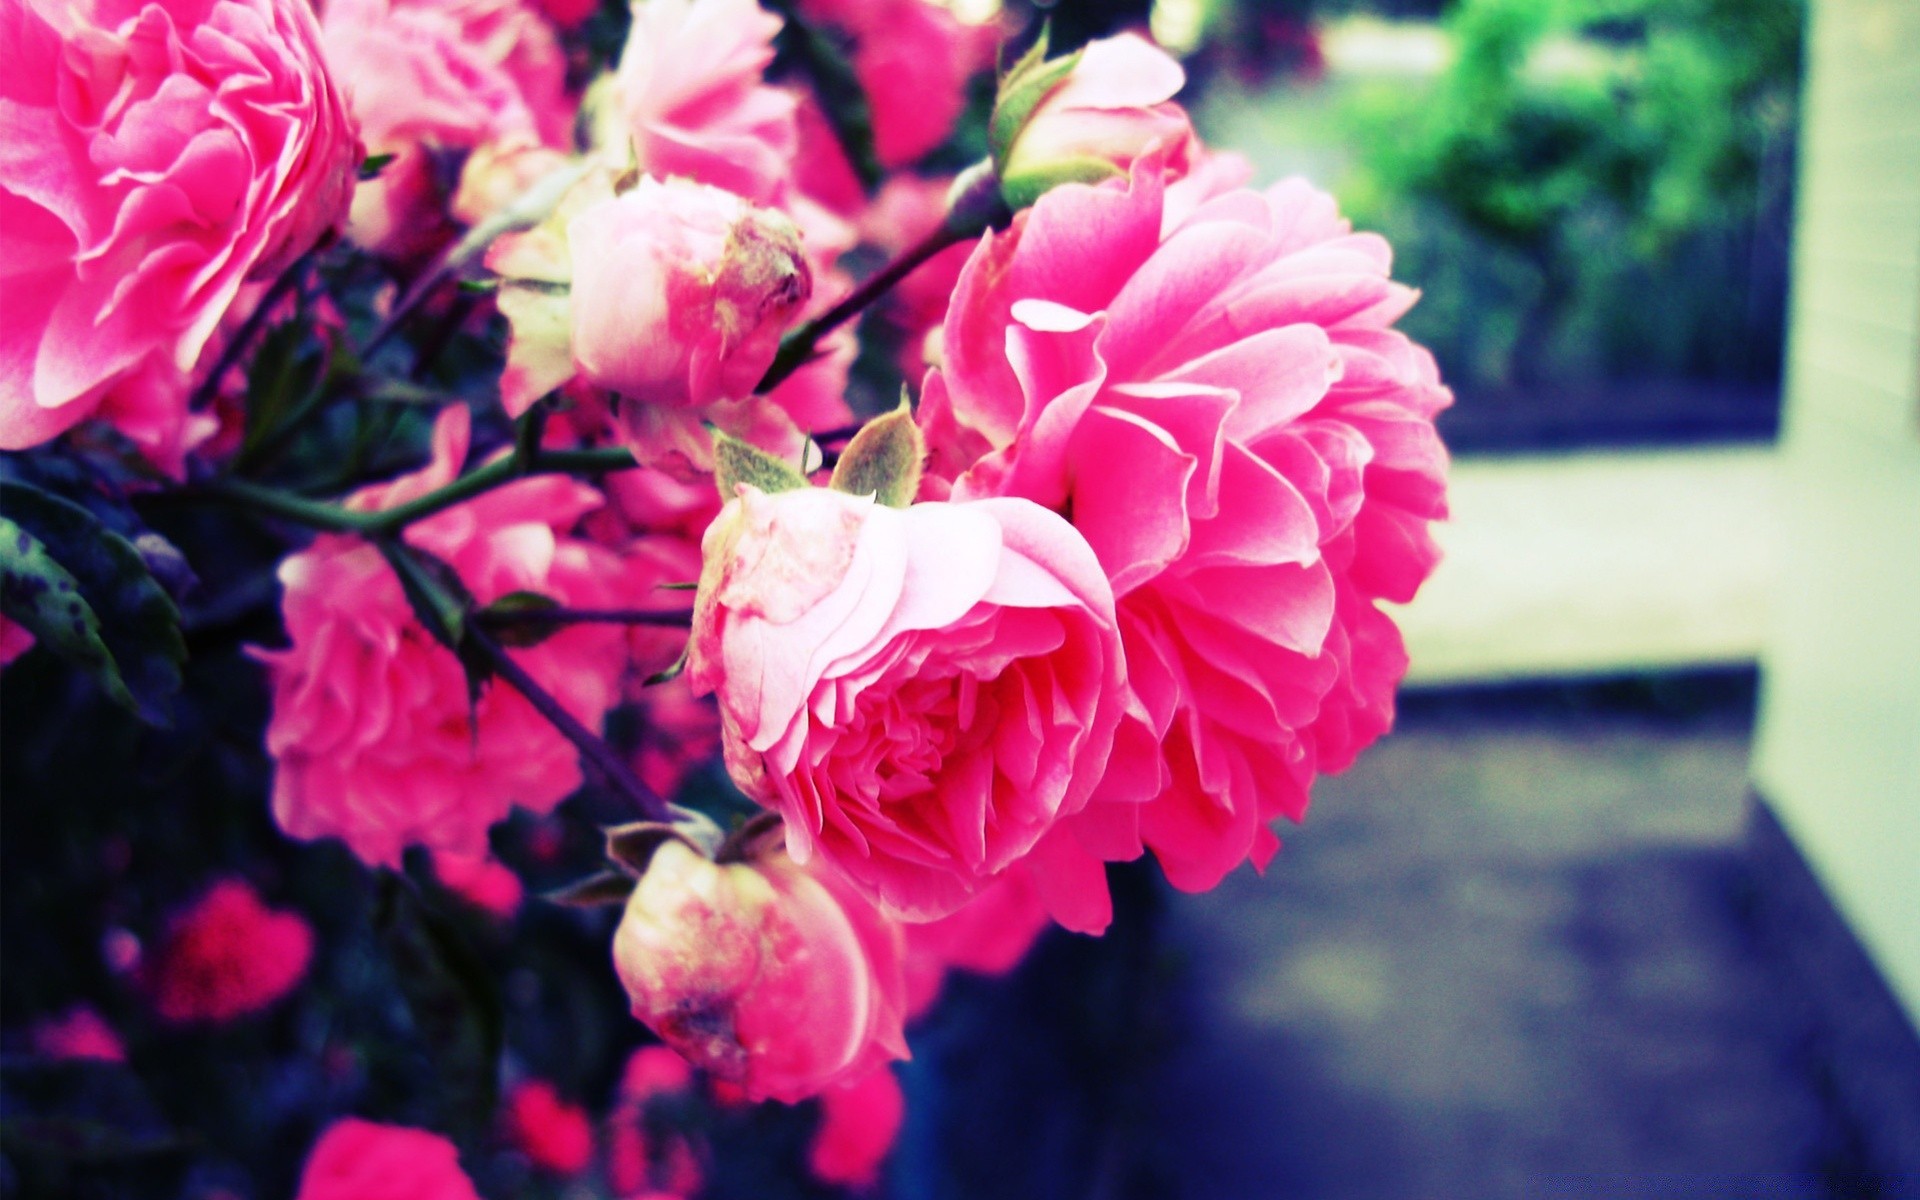 Hoa hồng - Sự kiêu sa của hoa hồng làm tan chảy bất kỳ trái tim nào. Những đóa hoa hồng đỏ đẹp nhất mang đến cho ta nhiều cảm xúc cùng vẻ đẹp hoàn mỹ. Hãy thưởng thức hình ảnh hoa hồng để tận hưởng niềm đam mê của bạn.